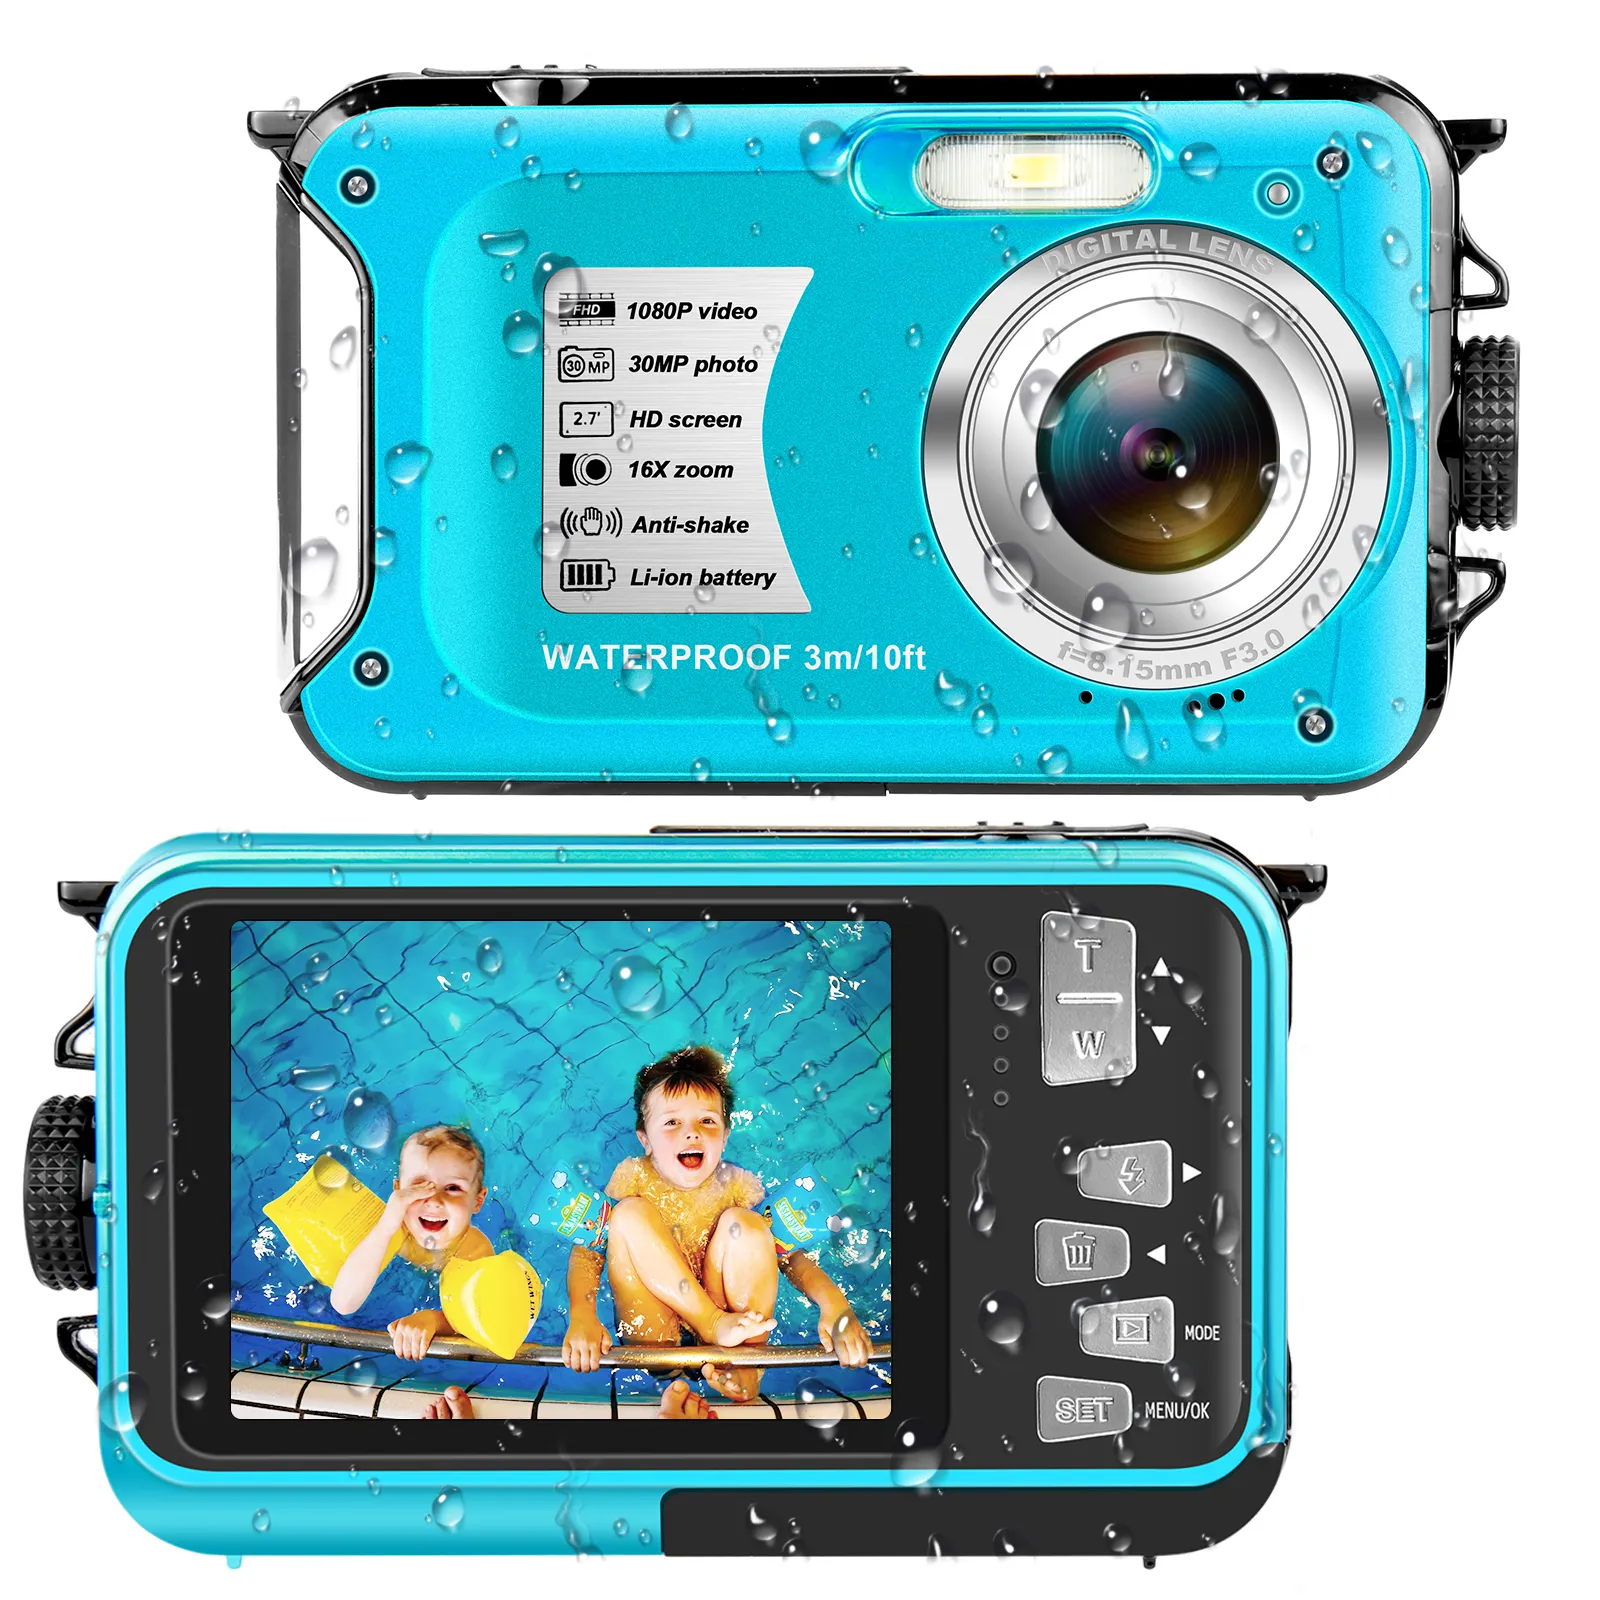 Miglior prezzo FHD 1080P Action Camera impermeabile con videocamera digitale a doppio schermo da 2.7 pollici